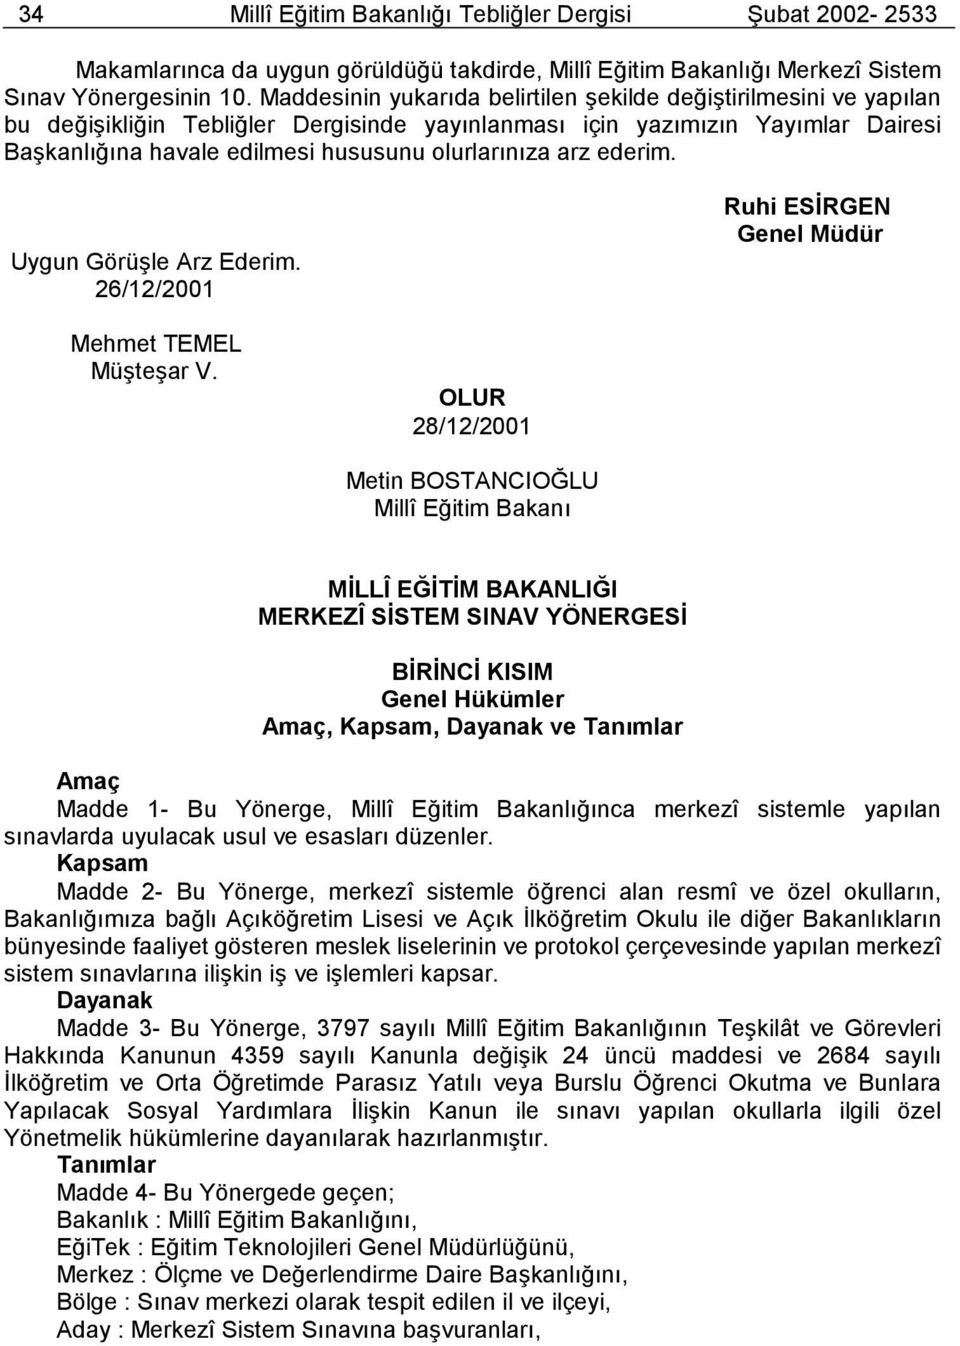 arz ederim. Uygun Görüşle Arz Ederim. 26/12/2001 Ruhi ESİRGEN Genel Müdür Mehmet TEMEL Müşteşar V.